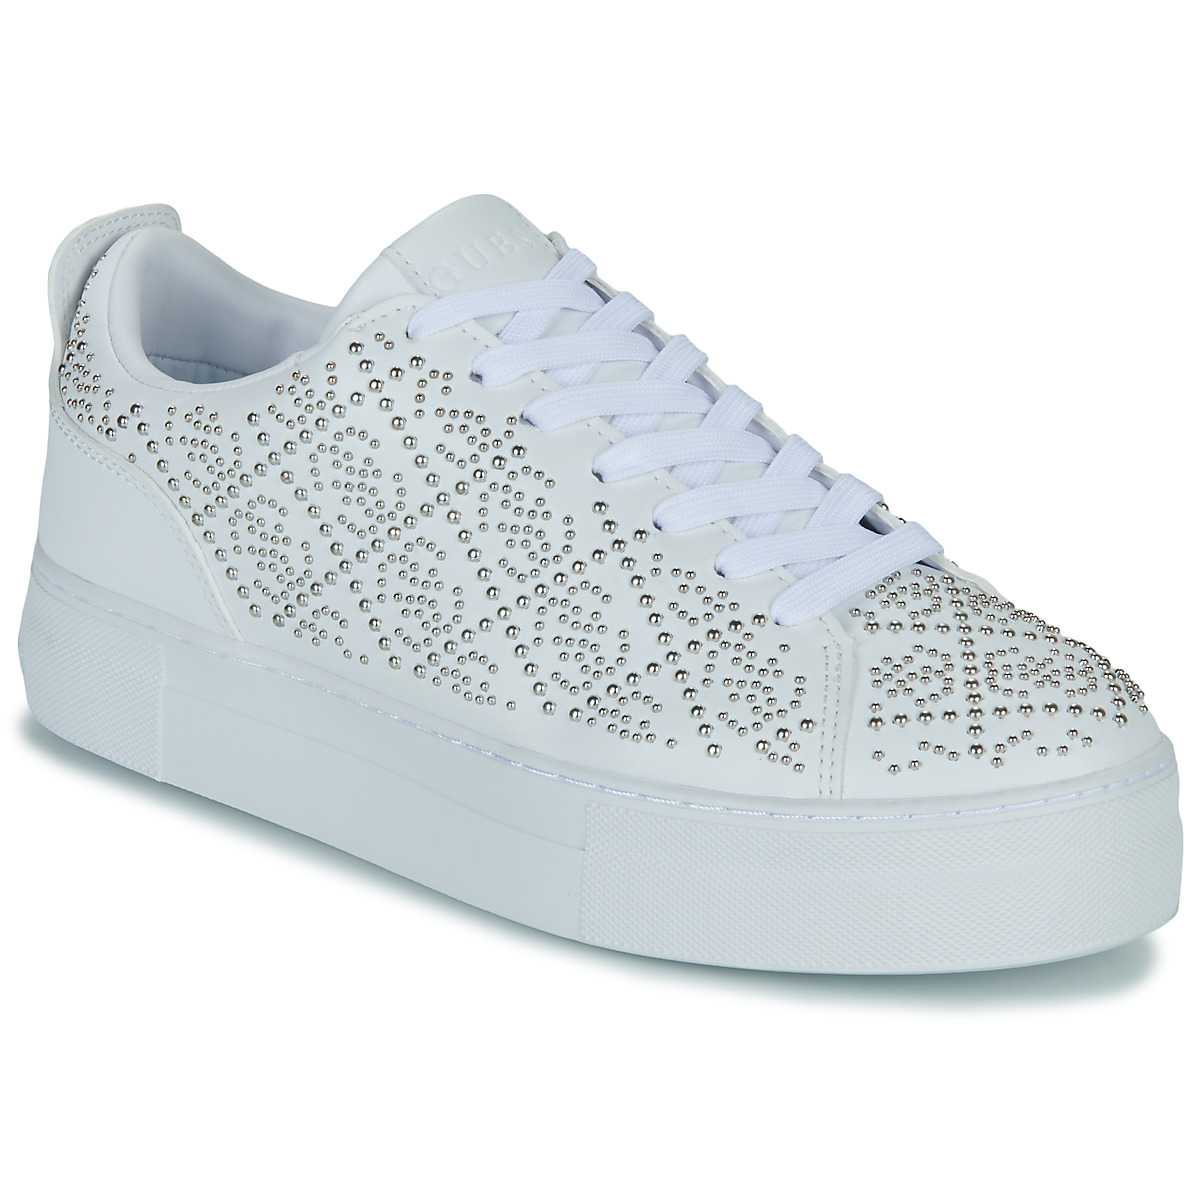 Παπούτσια Γυναίκα Χαμηλά Sneakers Guess GIAA5 Άσπρο / Silver